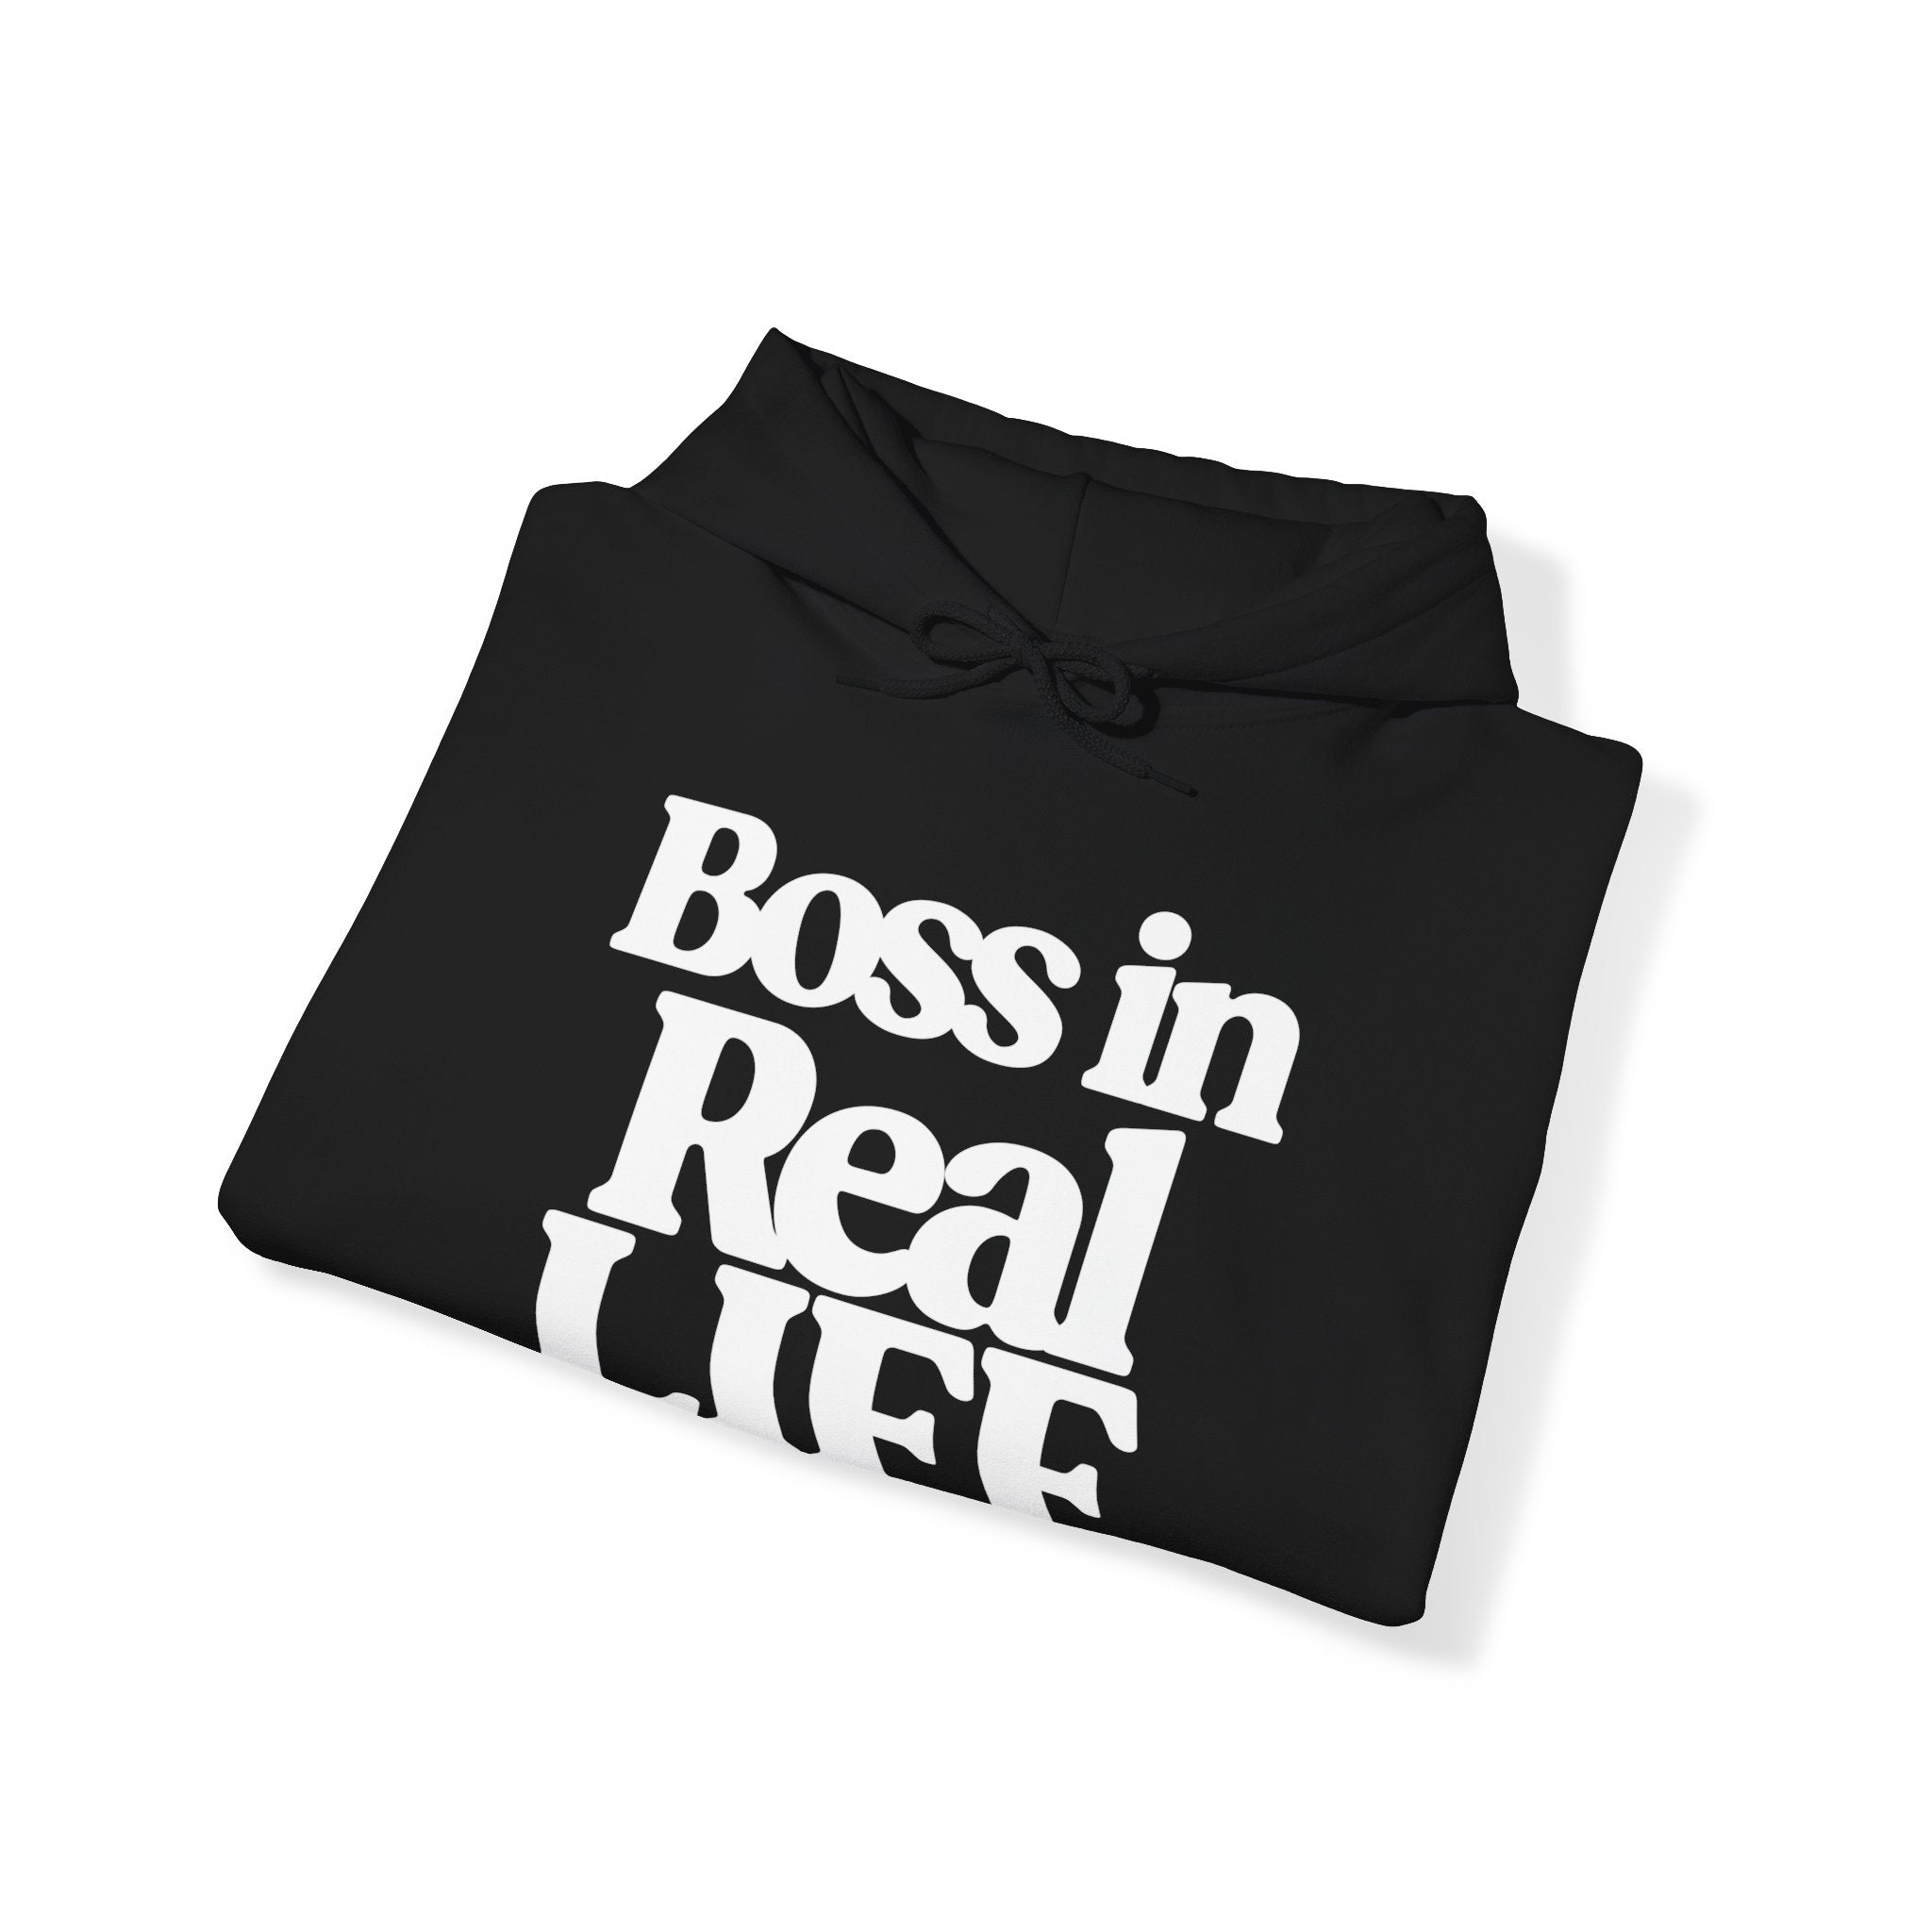 Boss Unisex Heavy Blend™ Hooded Sweatshirt